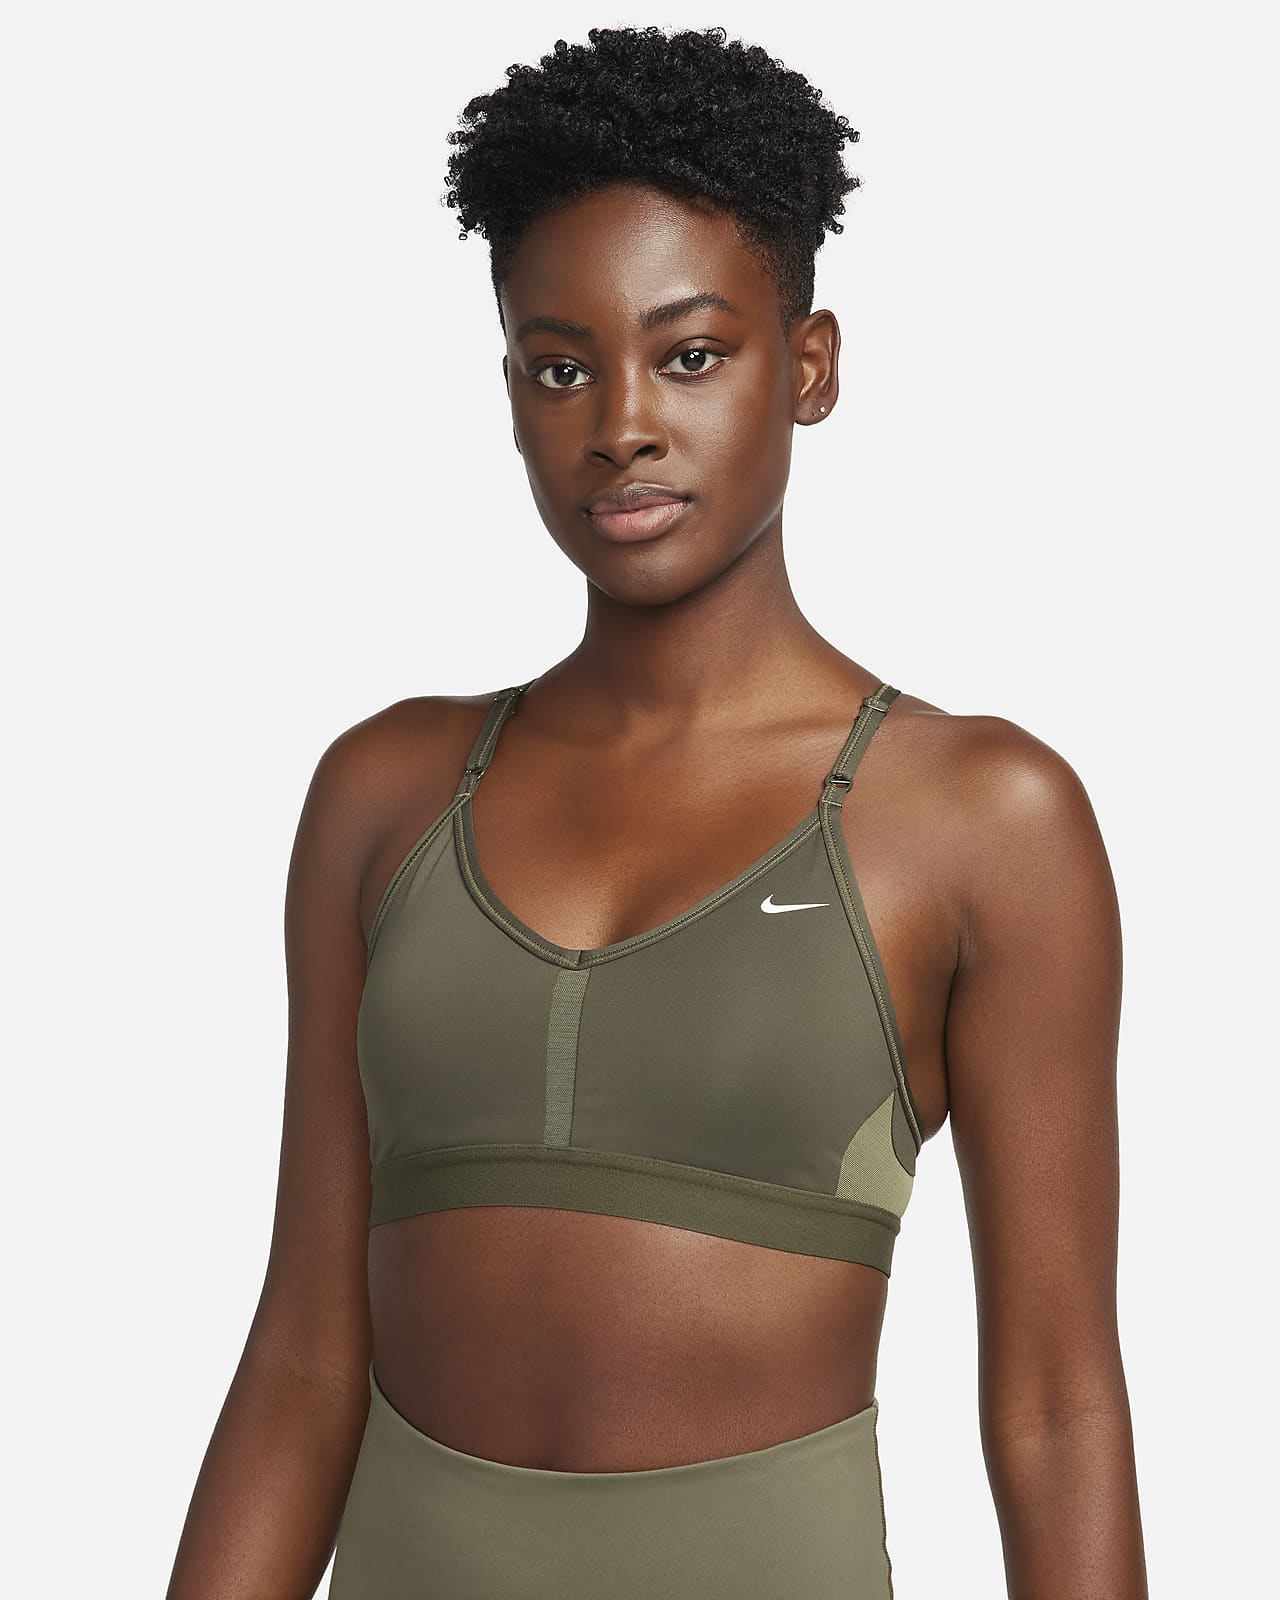 Nike Indy-sports-bh med V-hals, indlæg og let støtte til kvinder